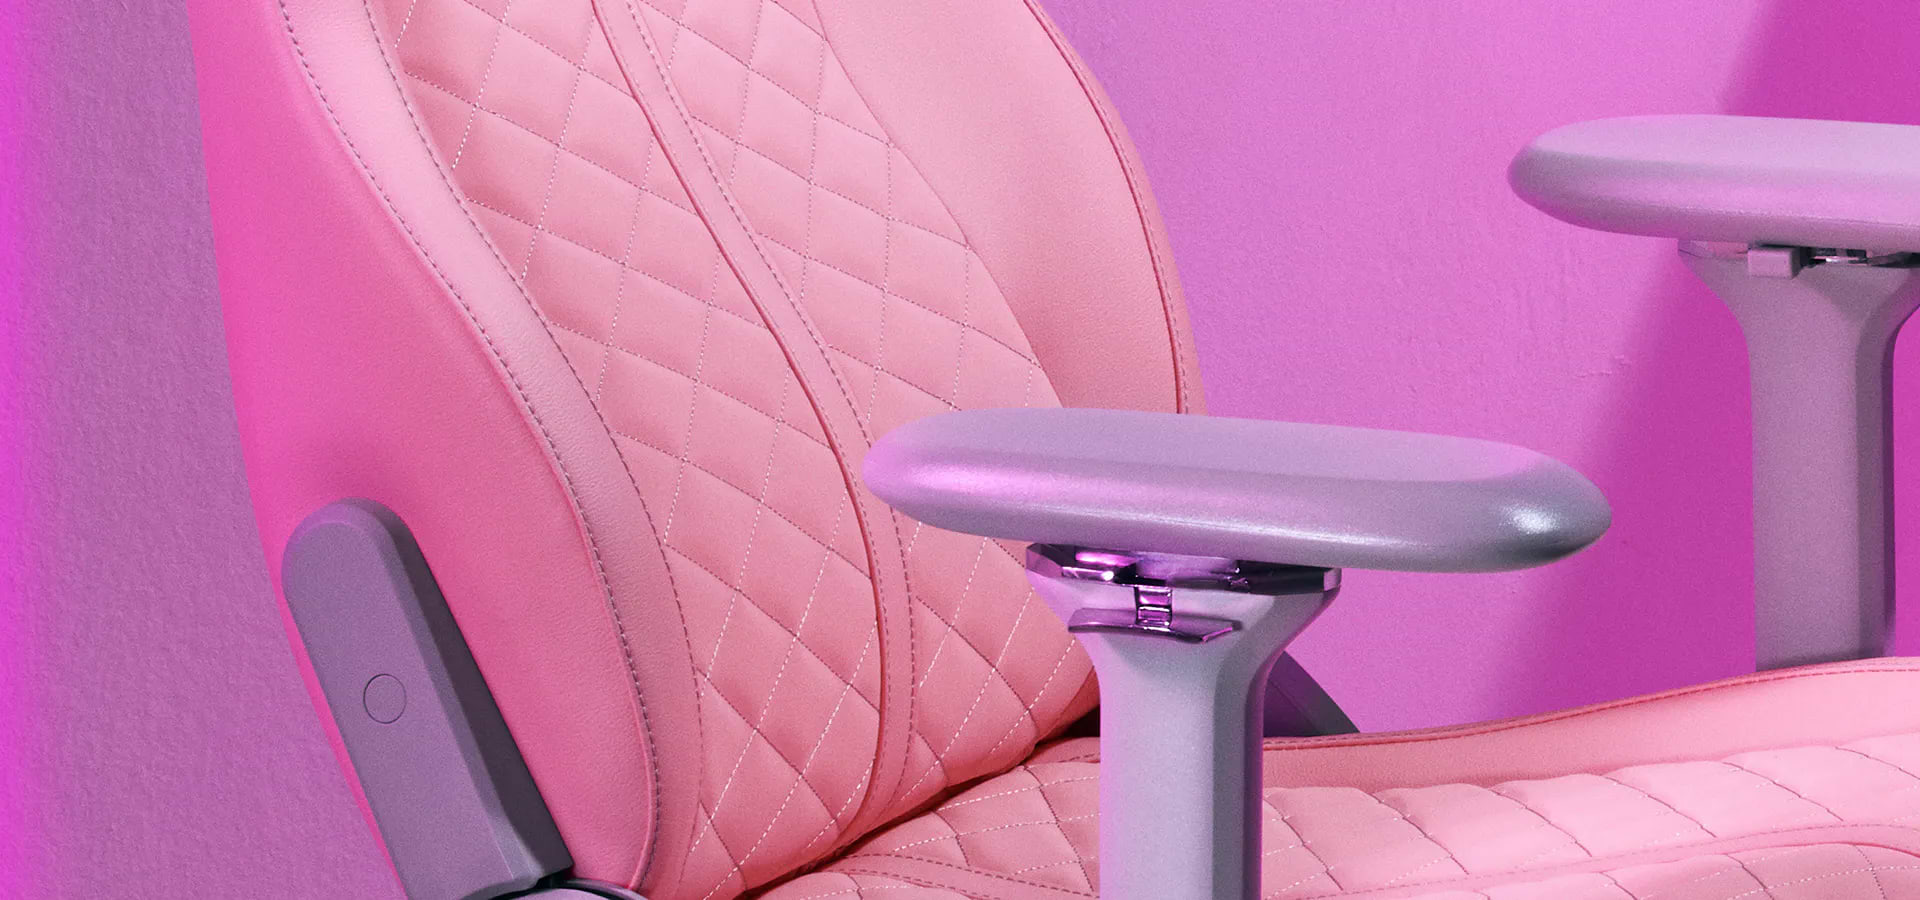 כיסא גיימינג Razer Enki - צבע ורוד שלוש שנות אחריות ע"י היבואן הרשמי